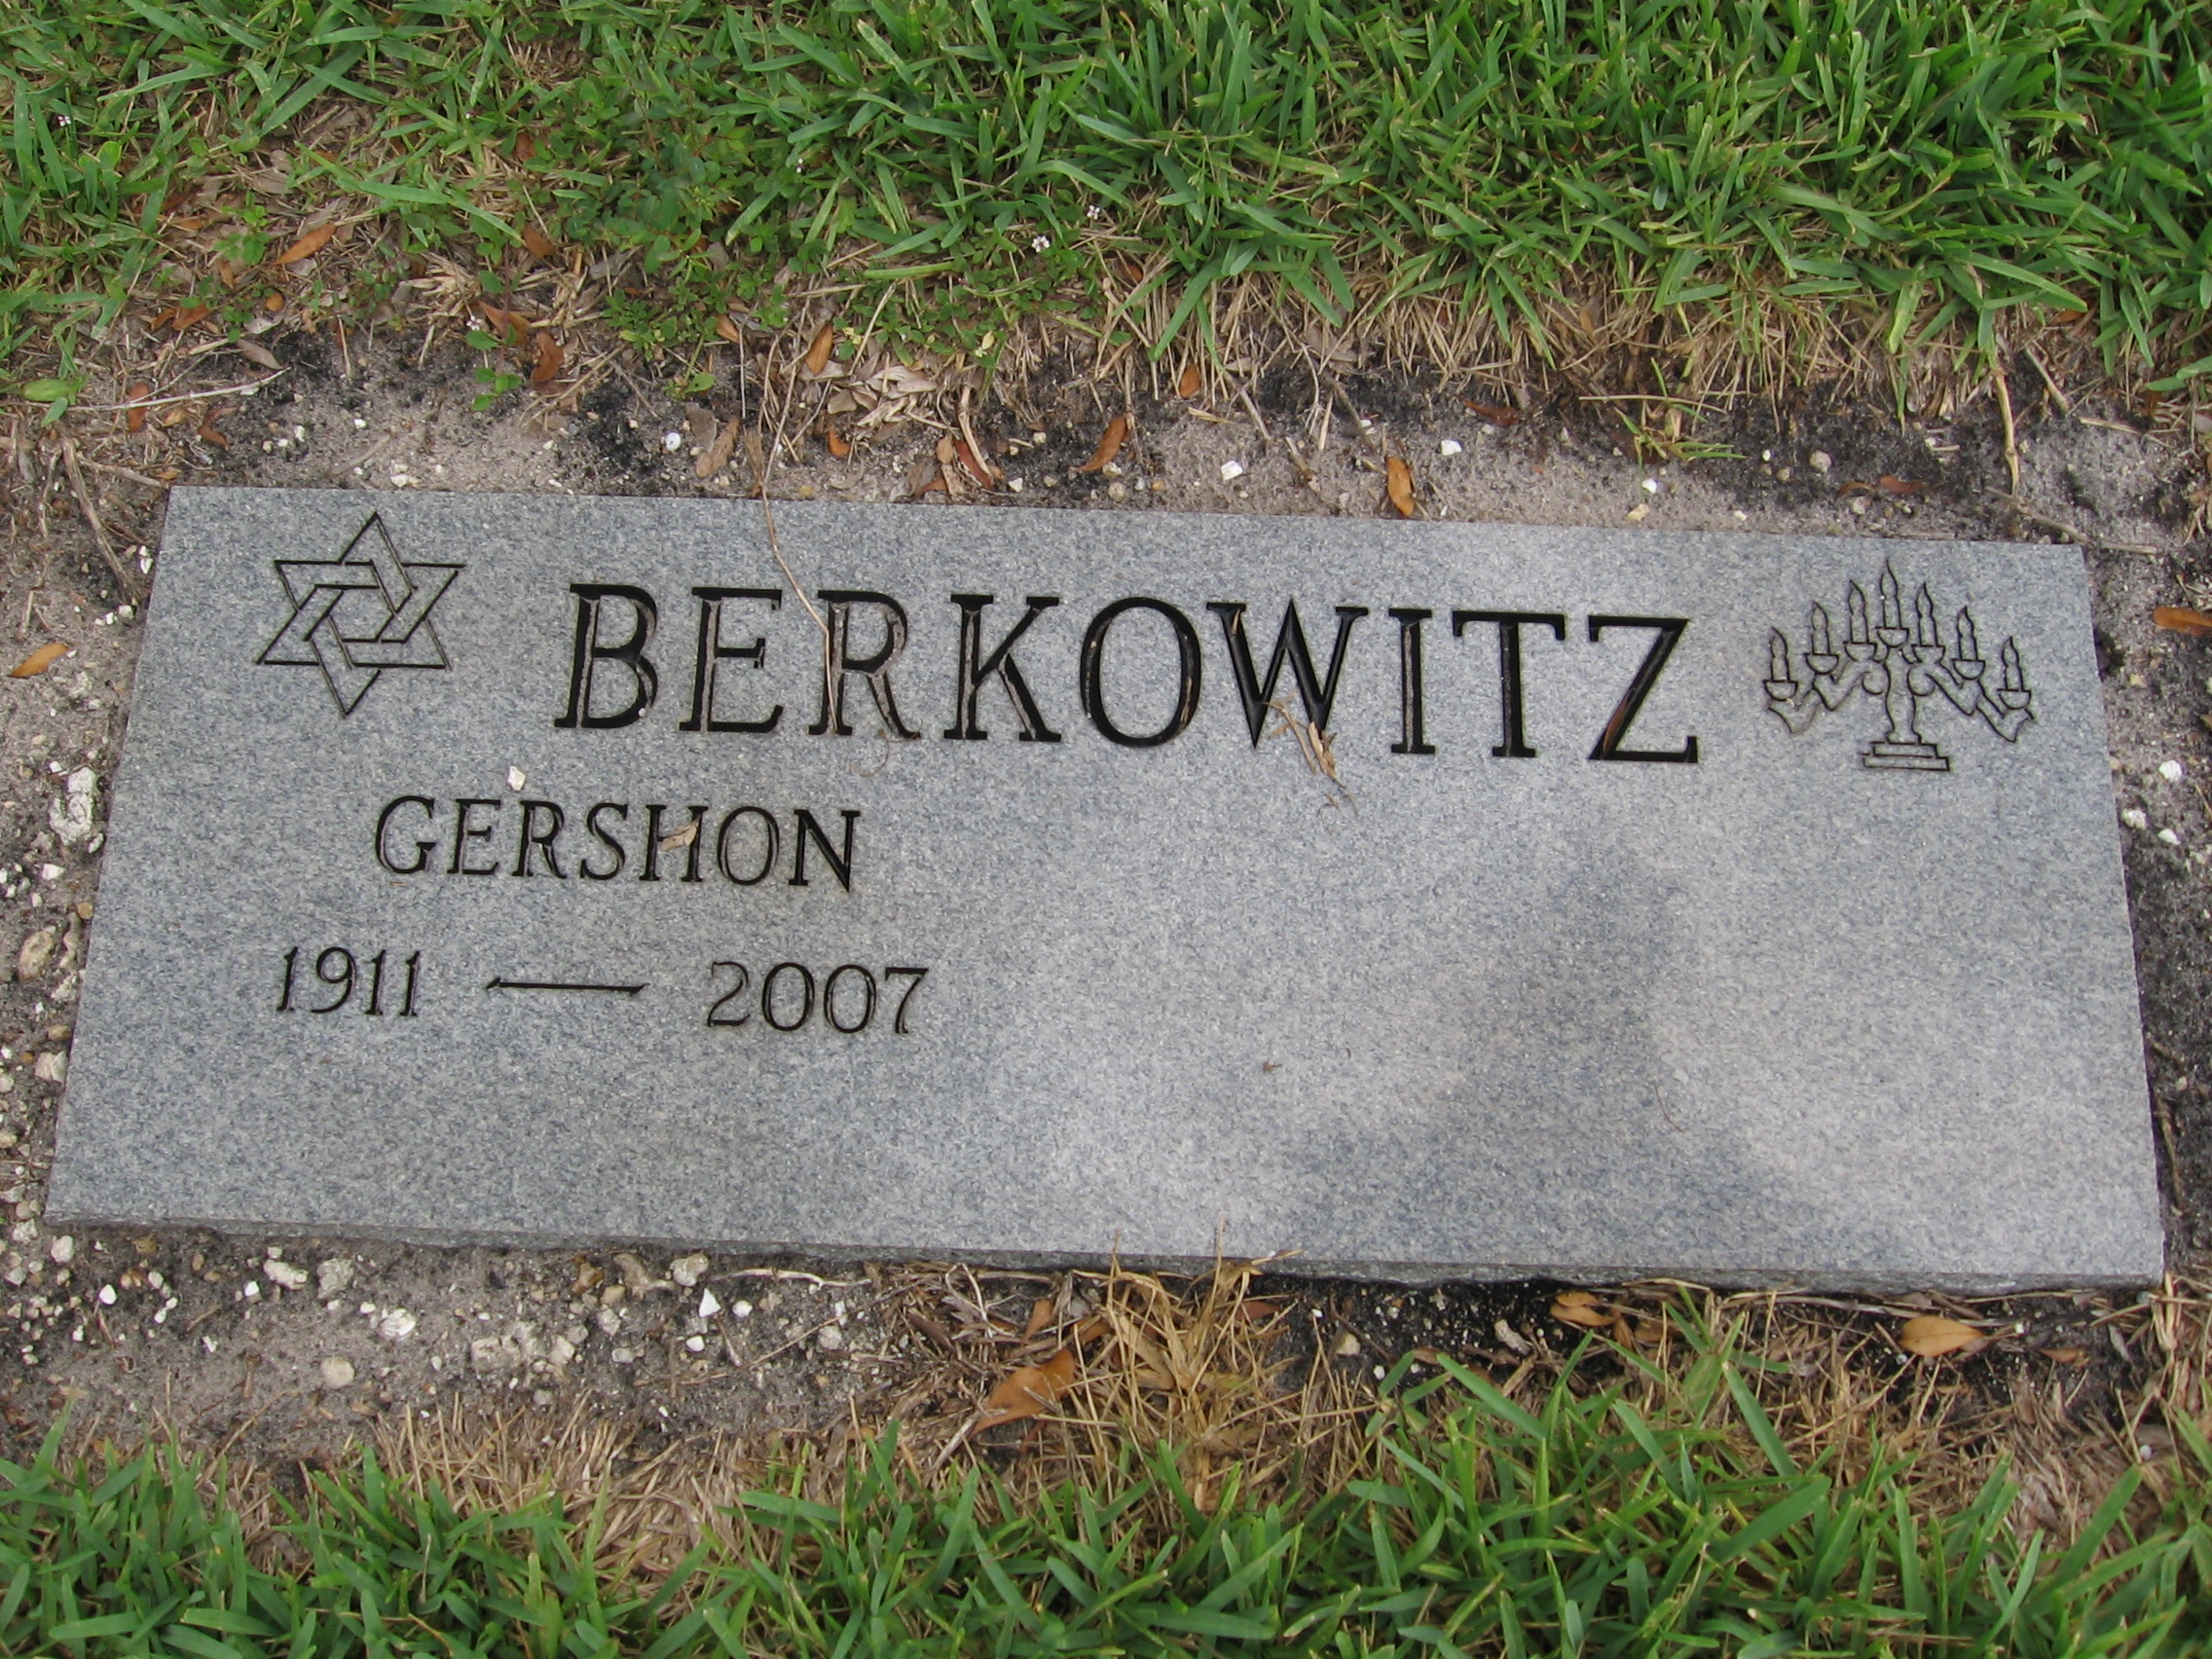 Gershon Berkowitz